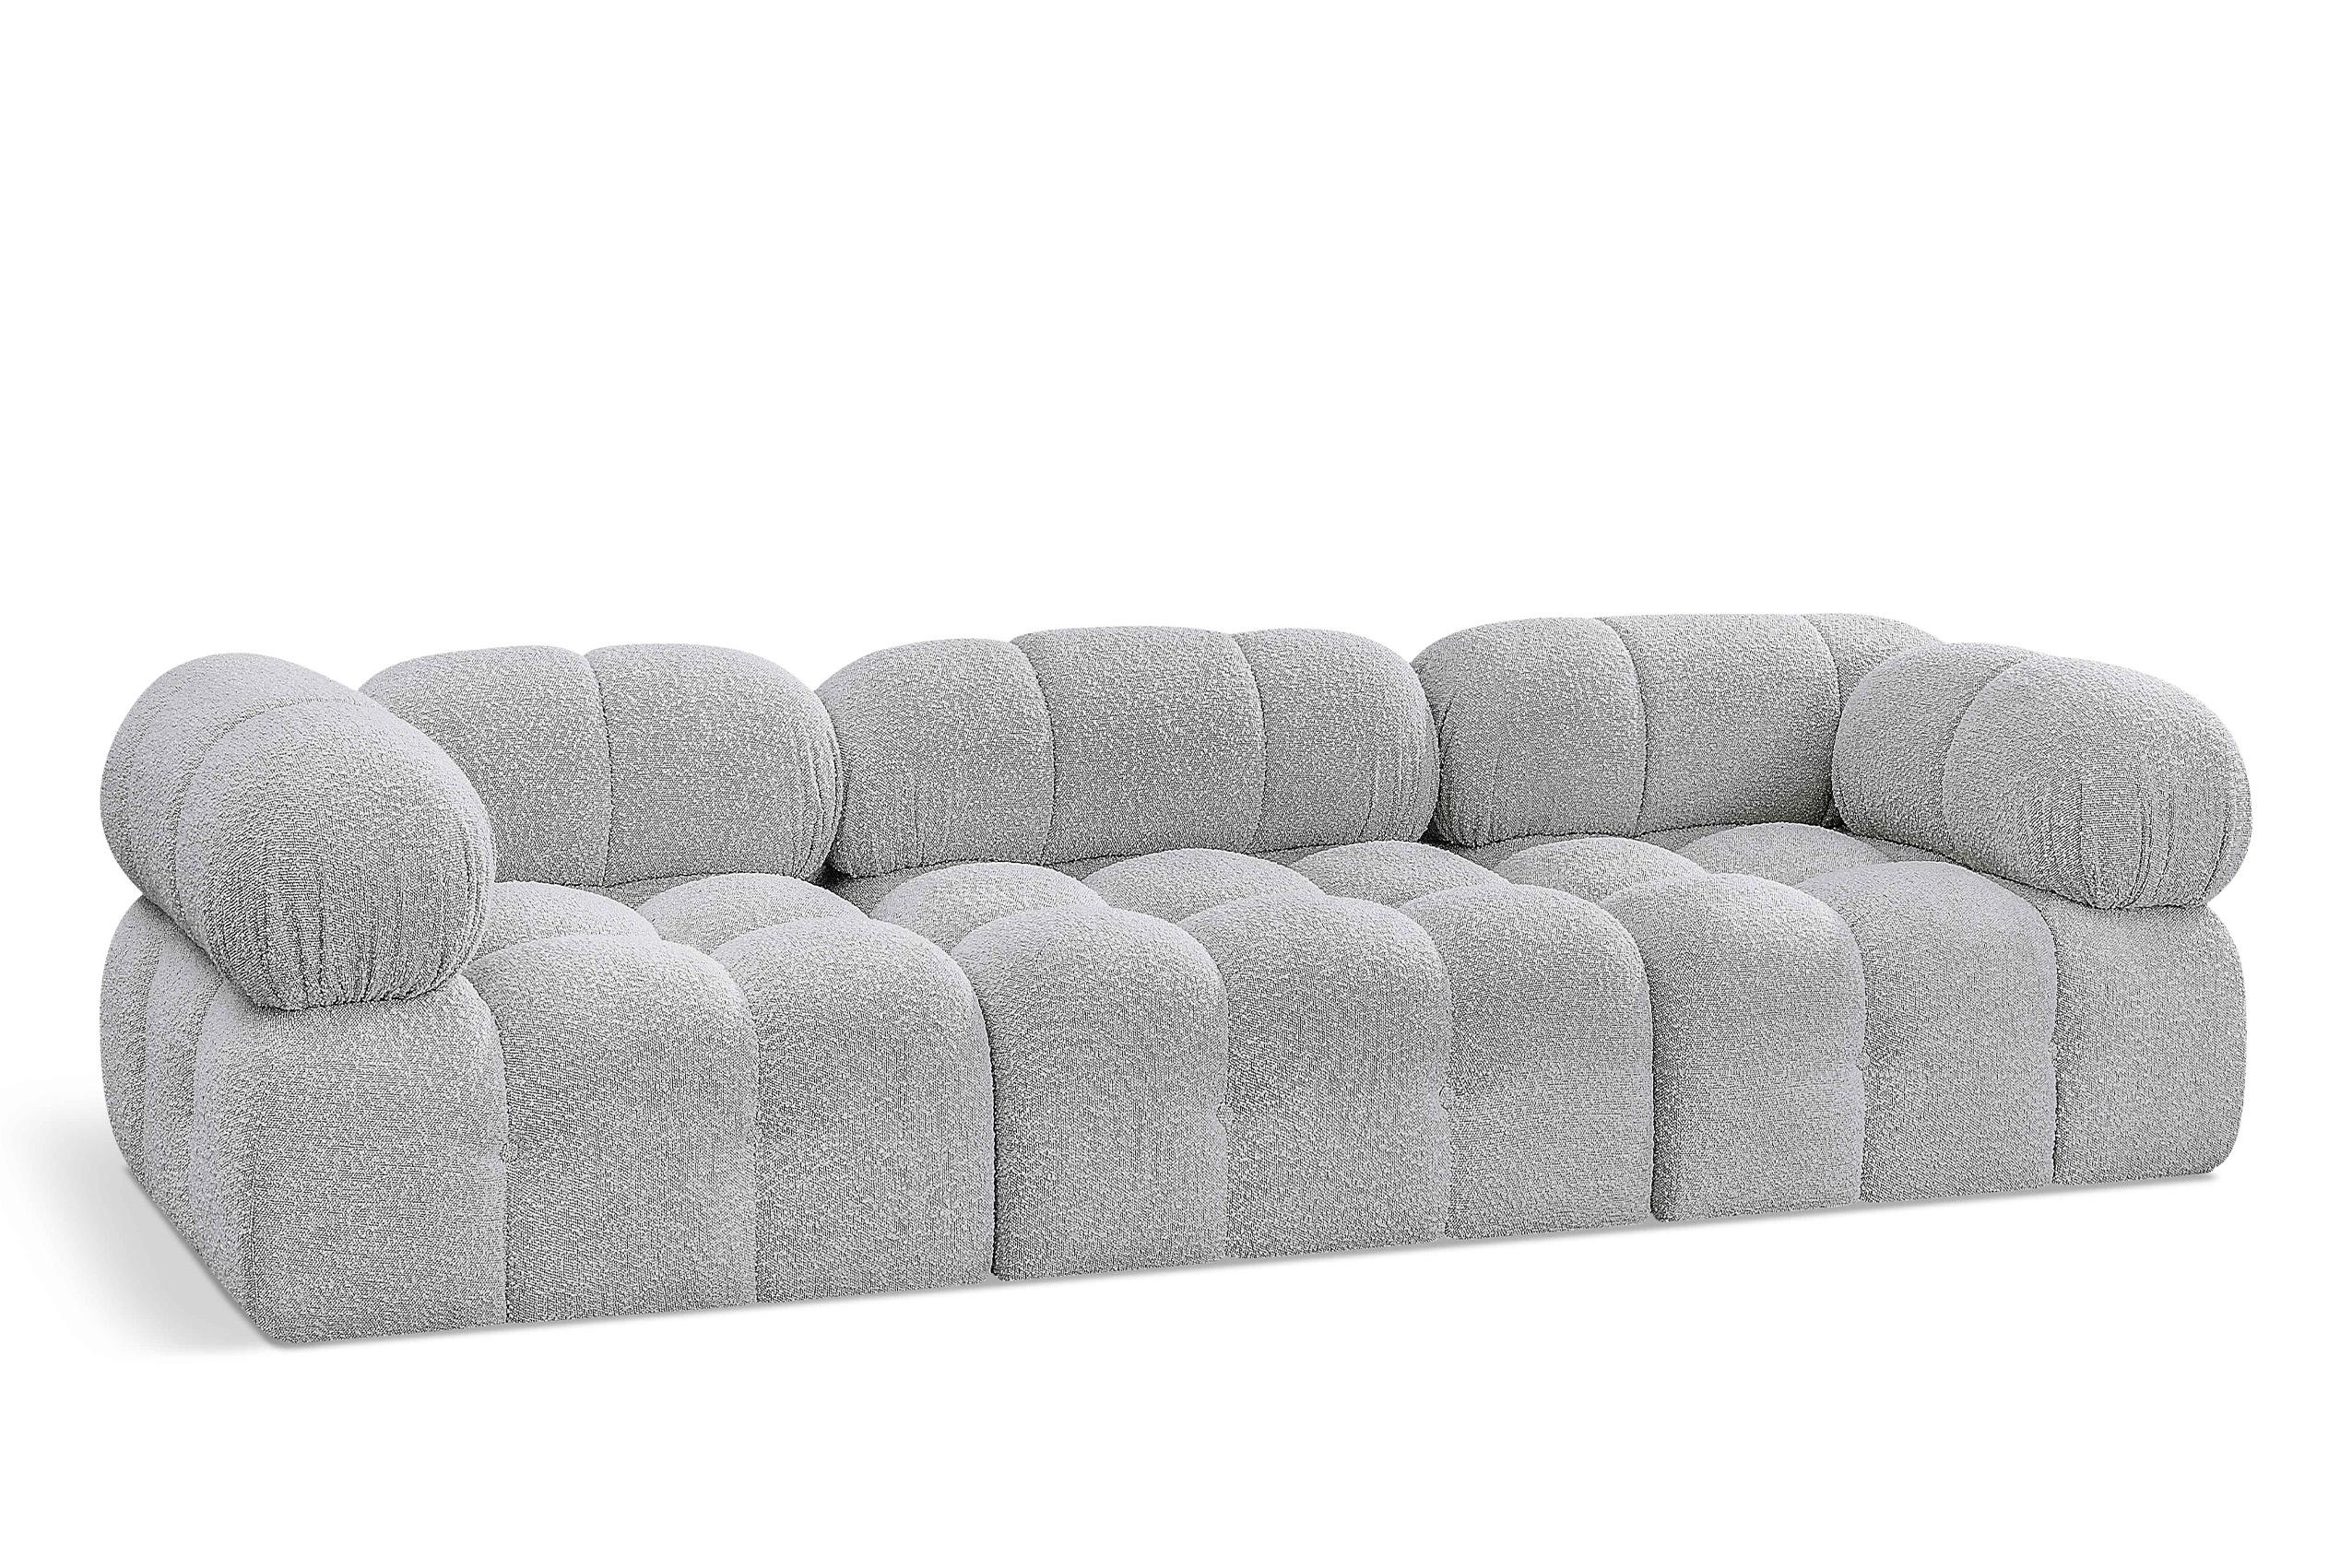 Contemporary, Modern Modular Sofa AMES 611Grey-S102A 611Grey-S102A in Gray 